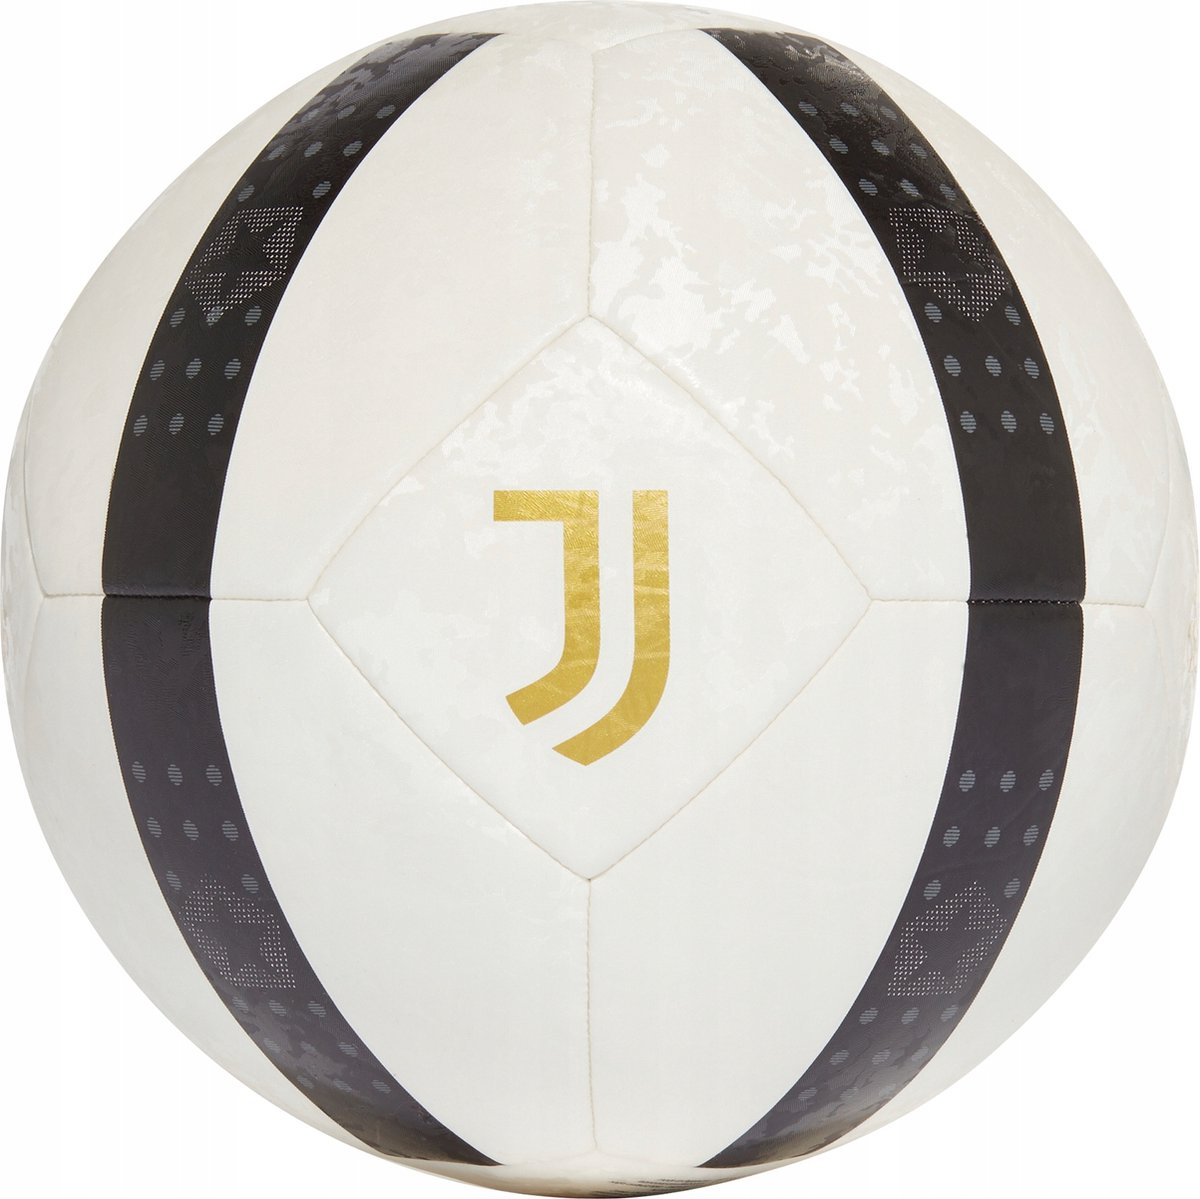 Adidas Juventus Voetbal - Maat 5 - adidas